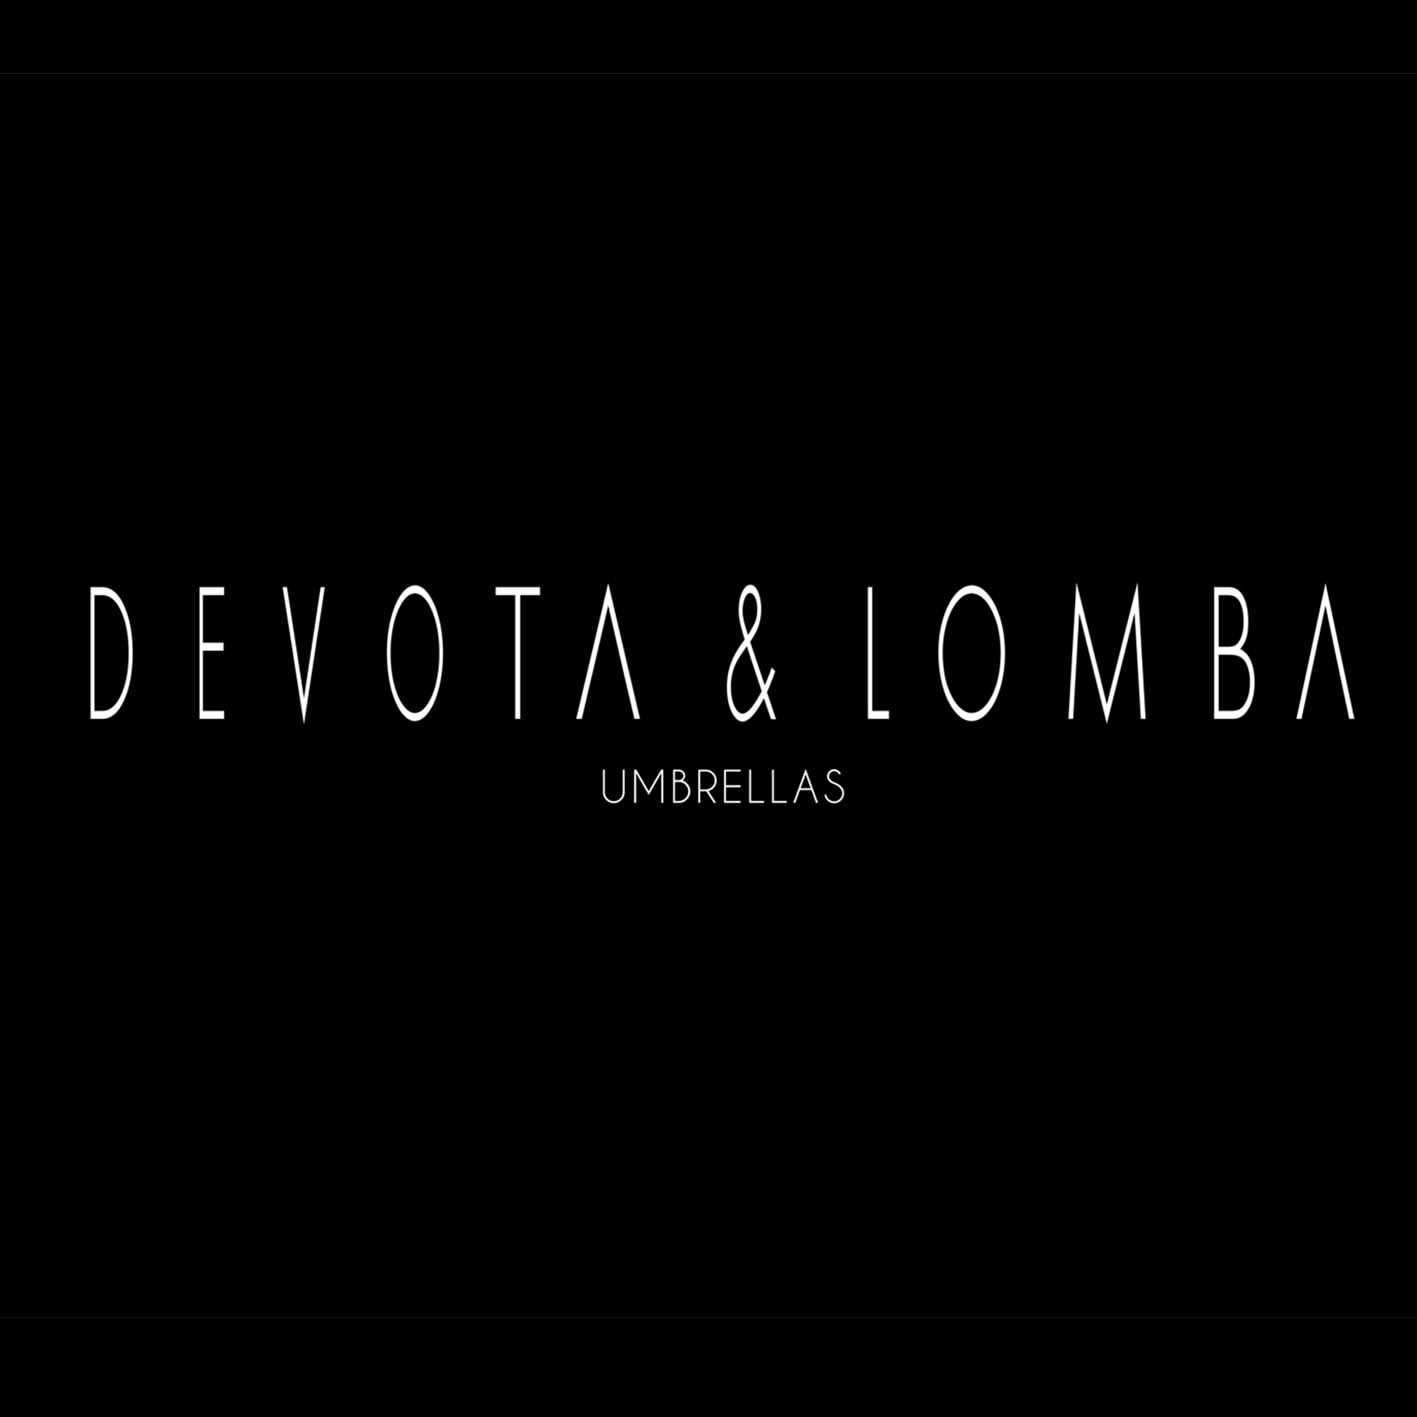 Devota&Lomba umbrella